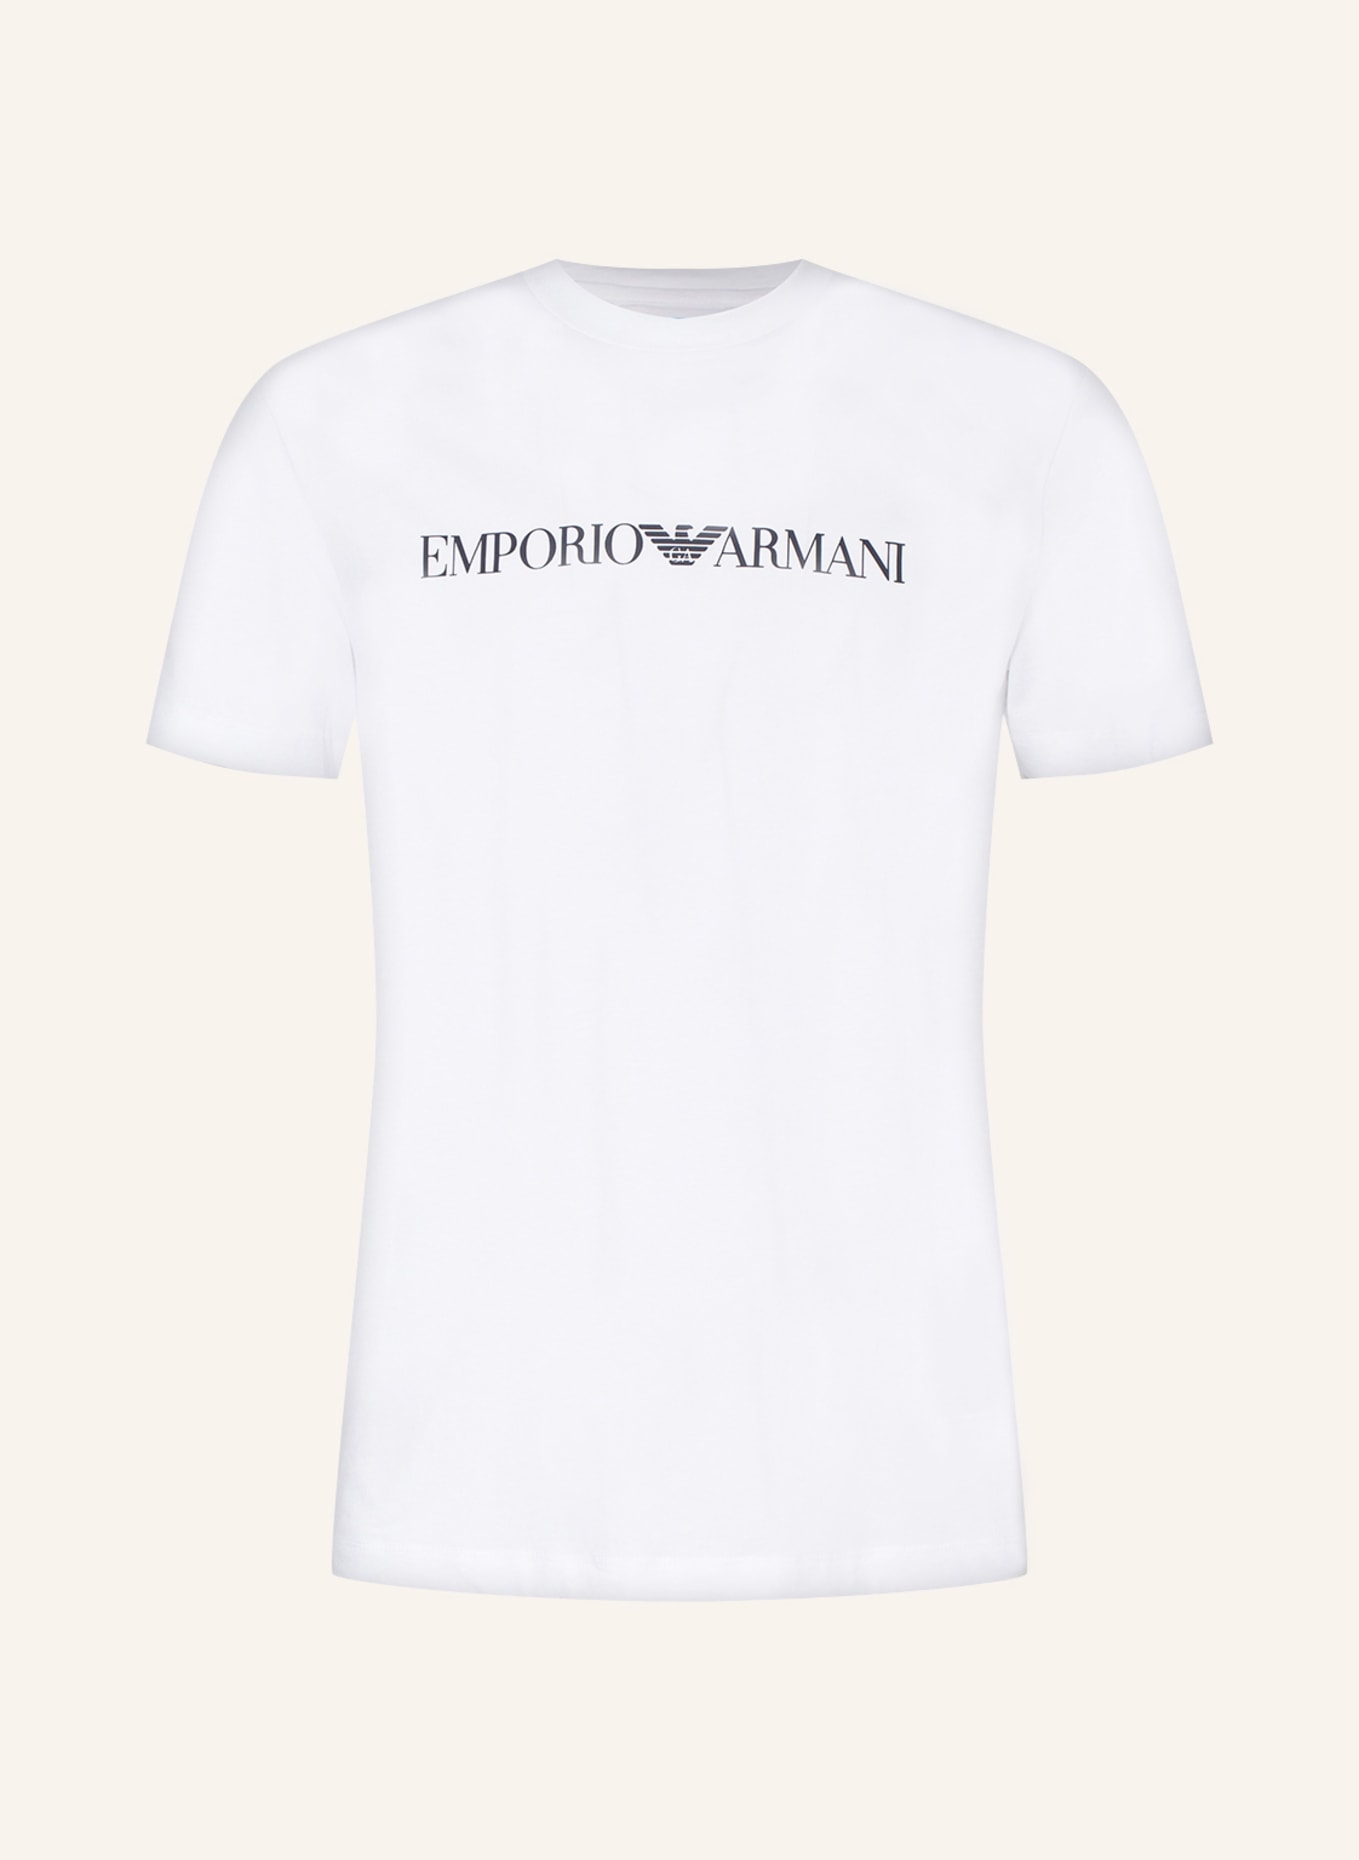 EMPORIO ARMANI T-shirt , Color: WHITE (Image 1)